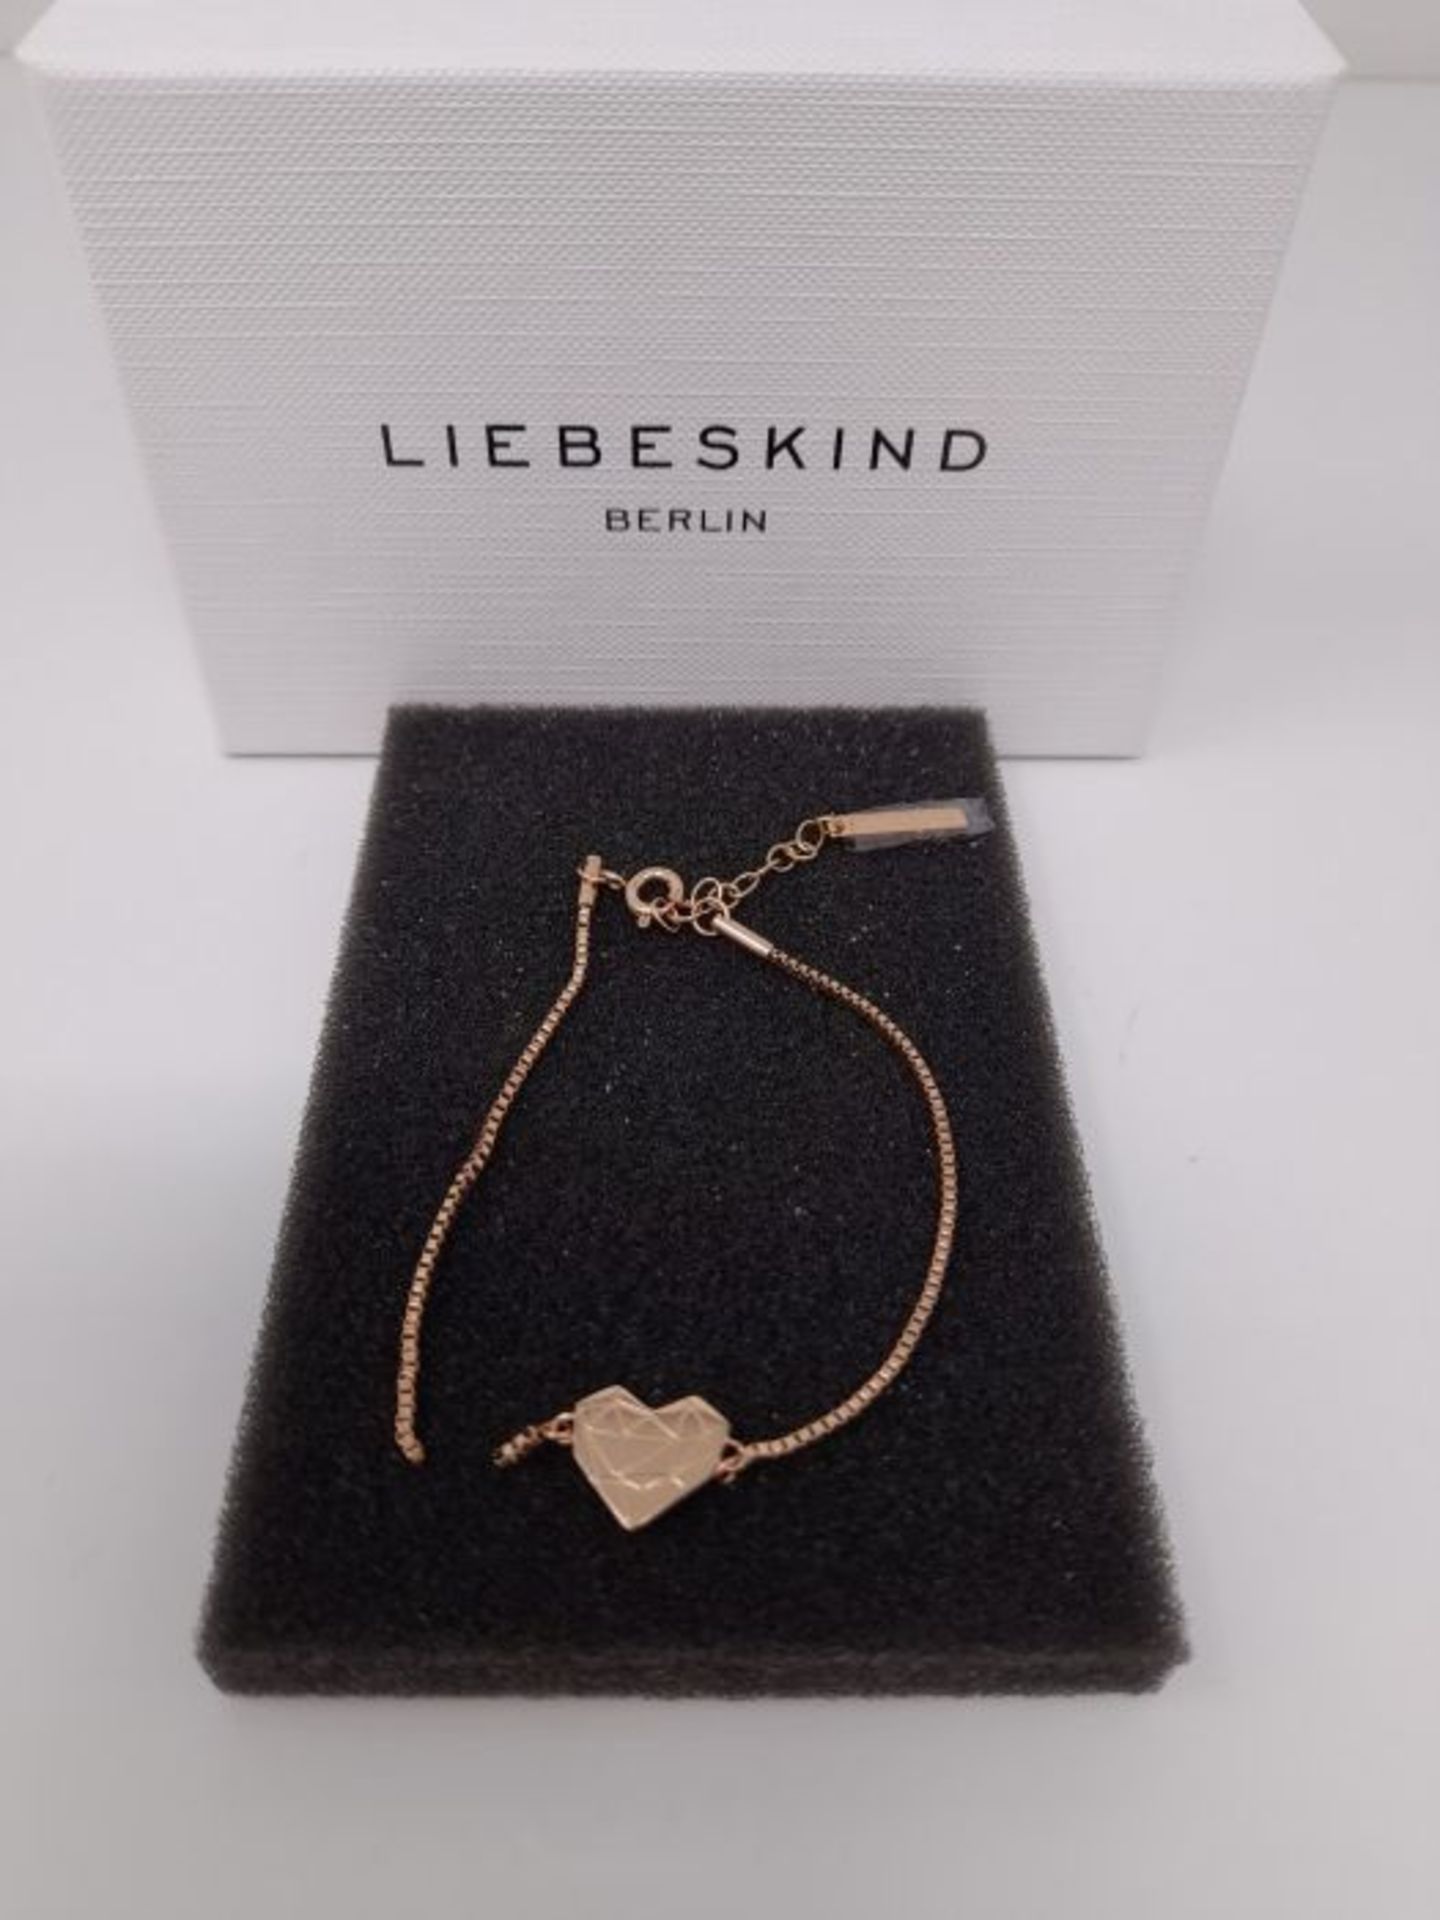 [CRACKED] Liebeskind Berlin Damen Armband Herz Edelstahl Silber 20 cm (roségold) - Image 3 of 3